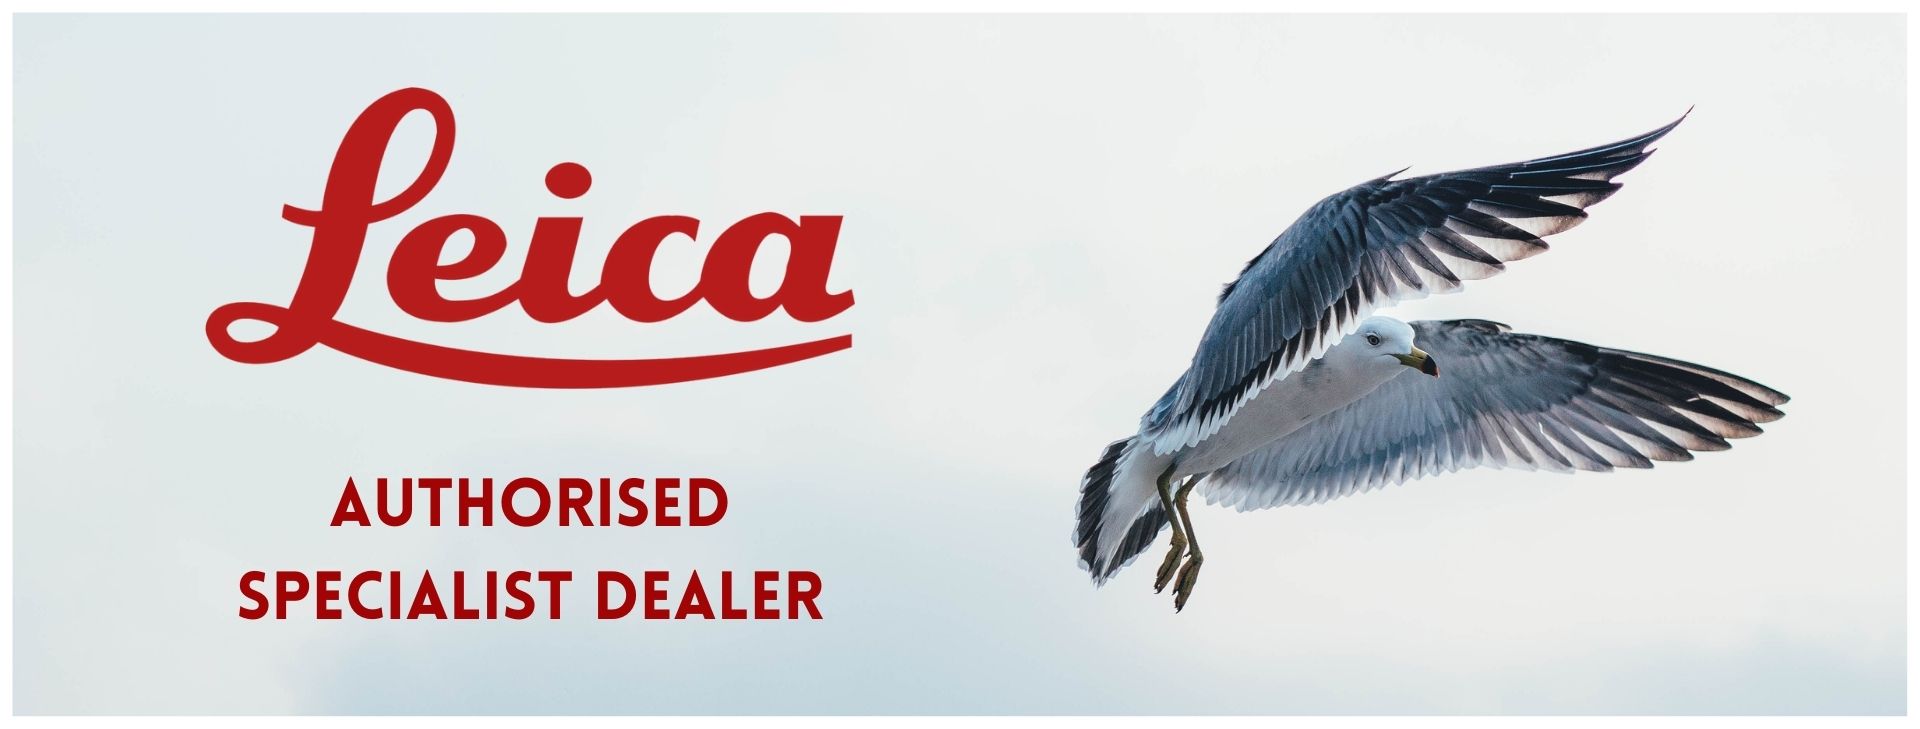 ace optics leica authorised dealer bird picture